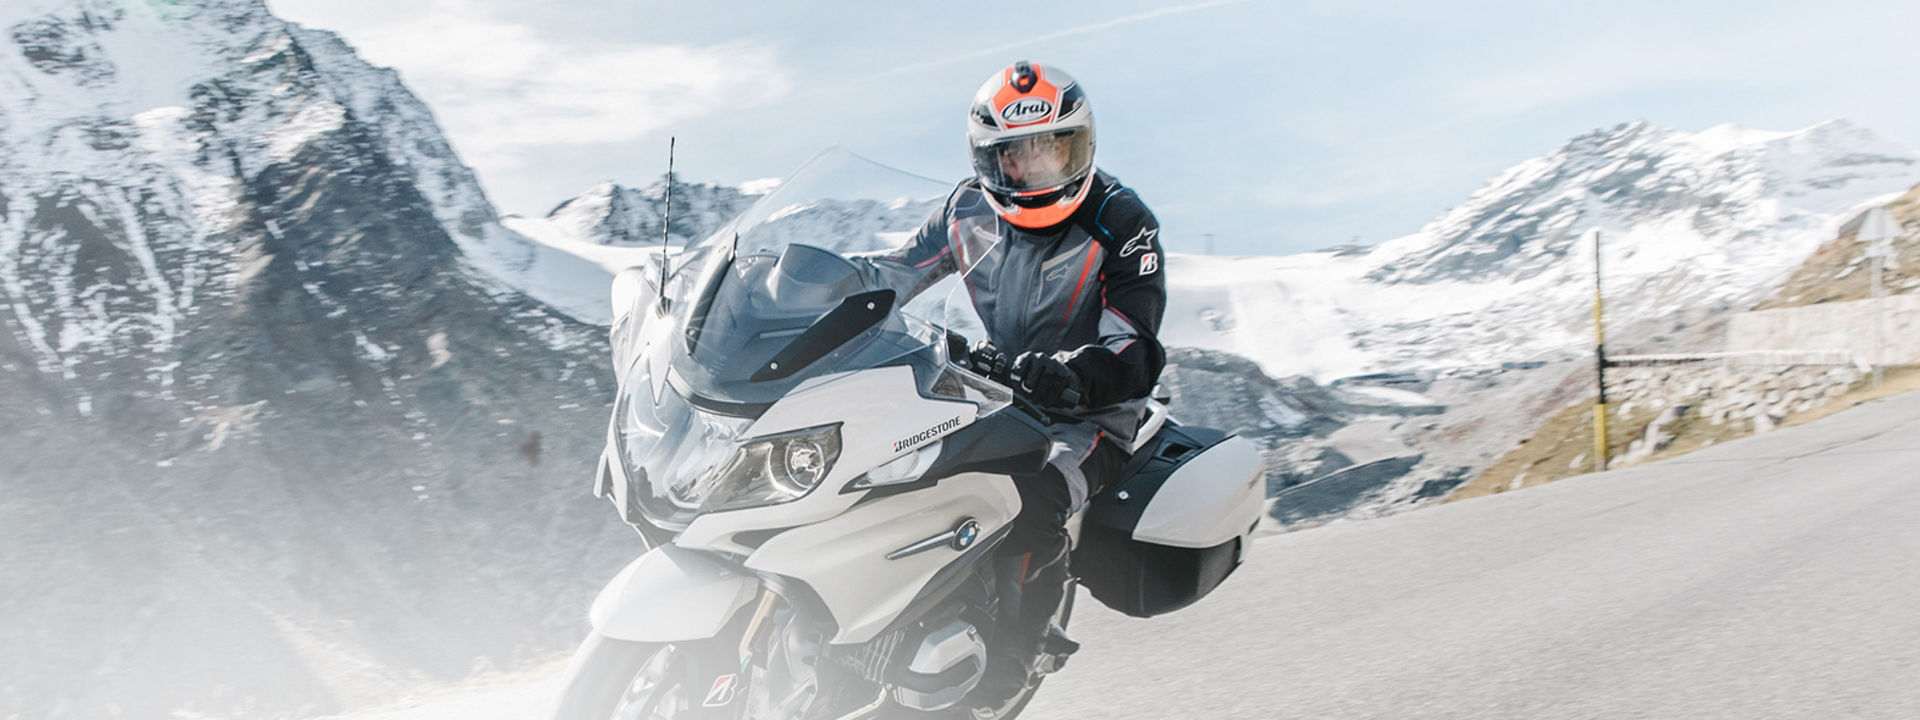 Obrázek ukazuje motocyklistu jedoucího na motorce se Sport Touring pneumatikami Bridgestone malebnou cestou s horami v pozadí.